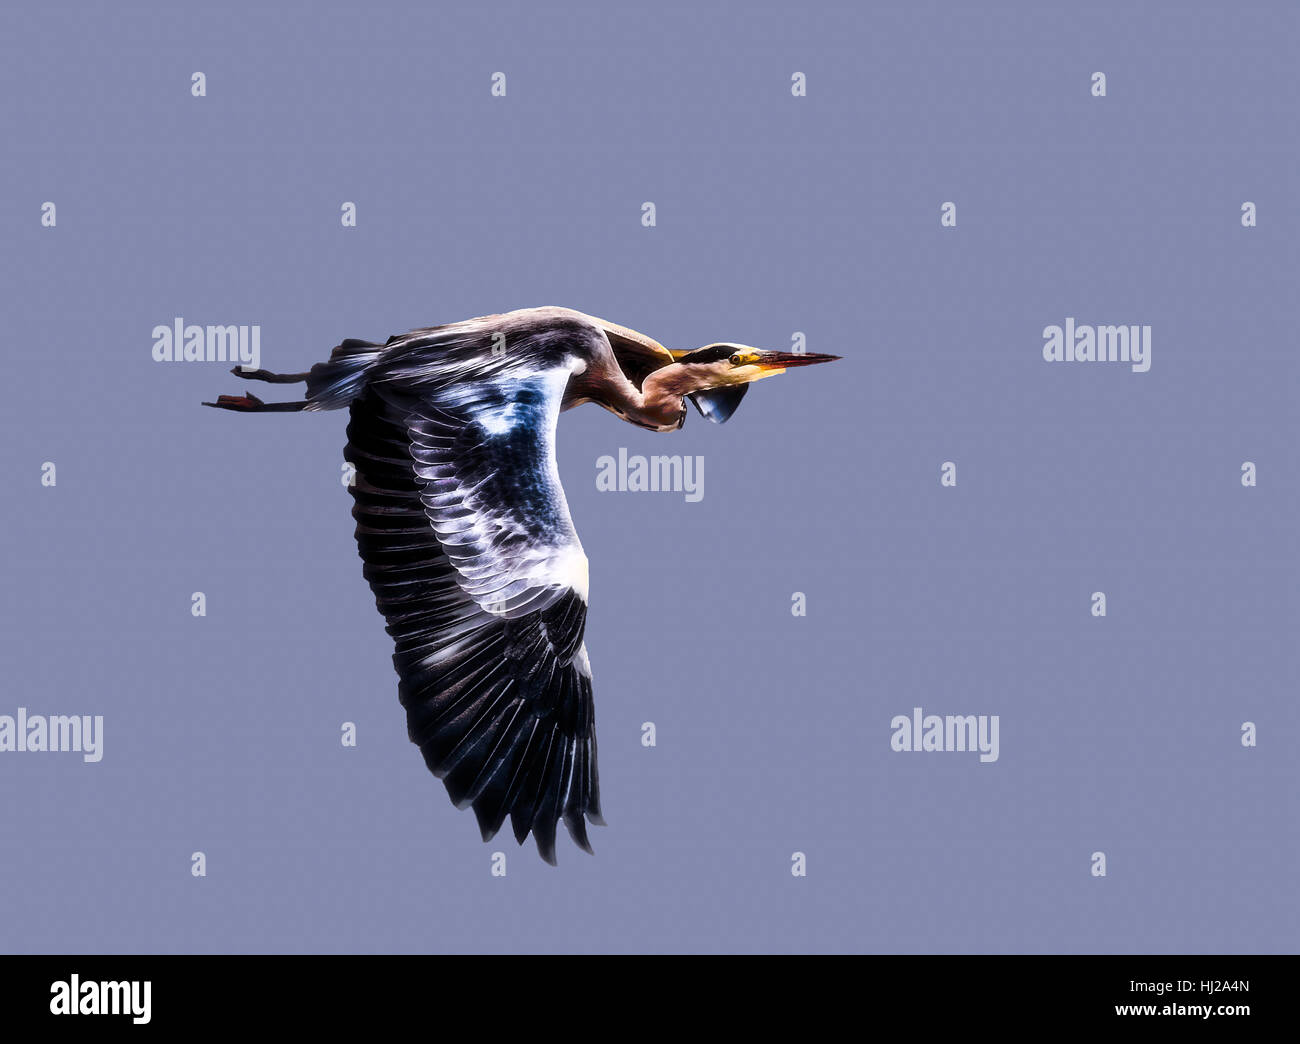 Immagine a colori di un singolo isolato heron / garzetta in fuga in avanti sotto sfondo blu cielo con ali ampia diffusione, simbolico il moto in avanti,Pittura Foto Stock